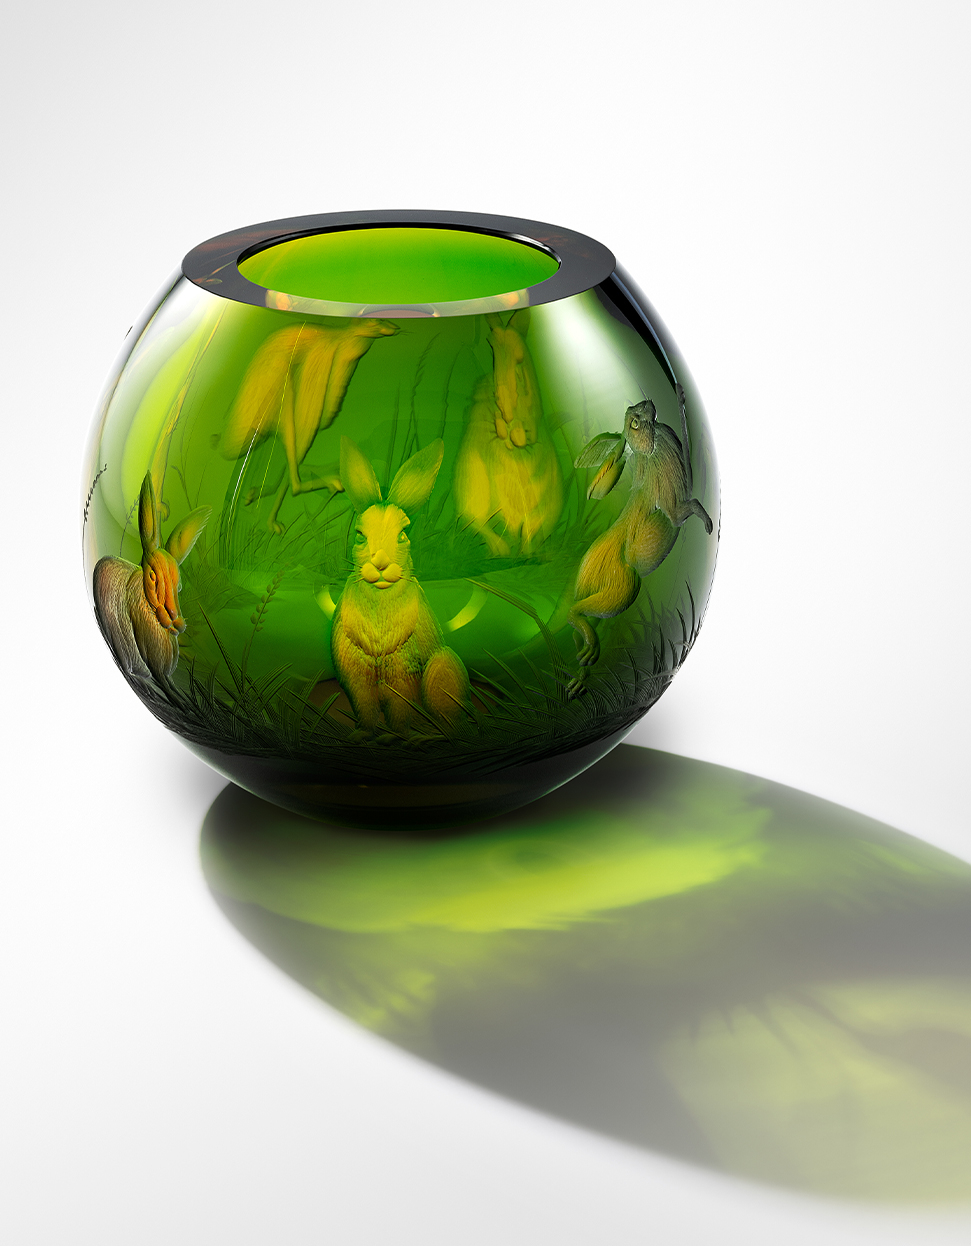 Beauty váza s rytinou zajíců, 13 cm - galerie #1